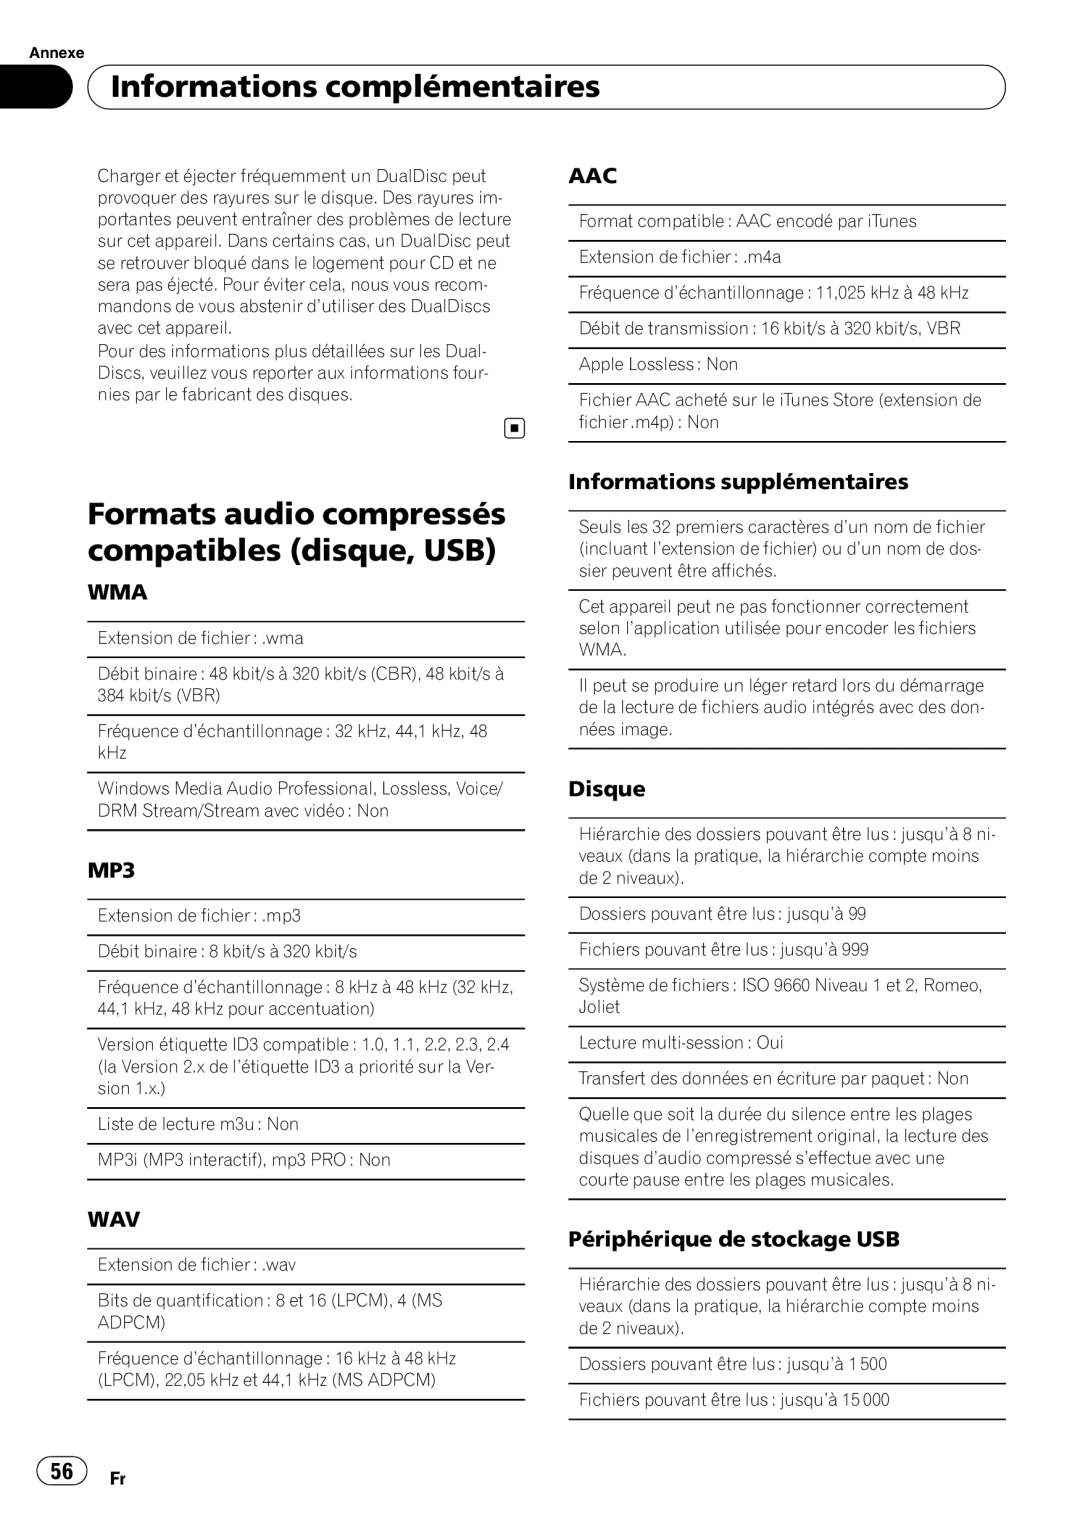 Pioneer DEH-P5200HD operation manual Formats audio compressés compatibles disque, USB, Informations complémentaires, Disque 